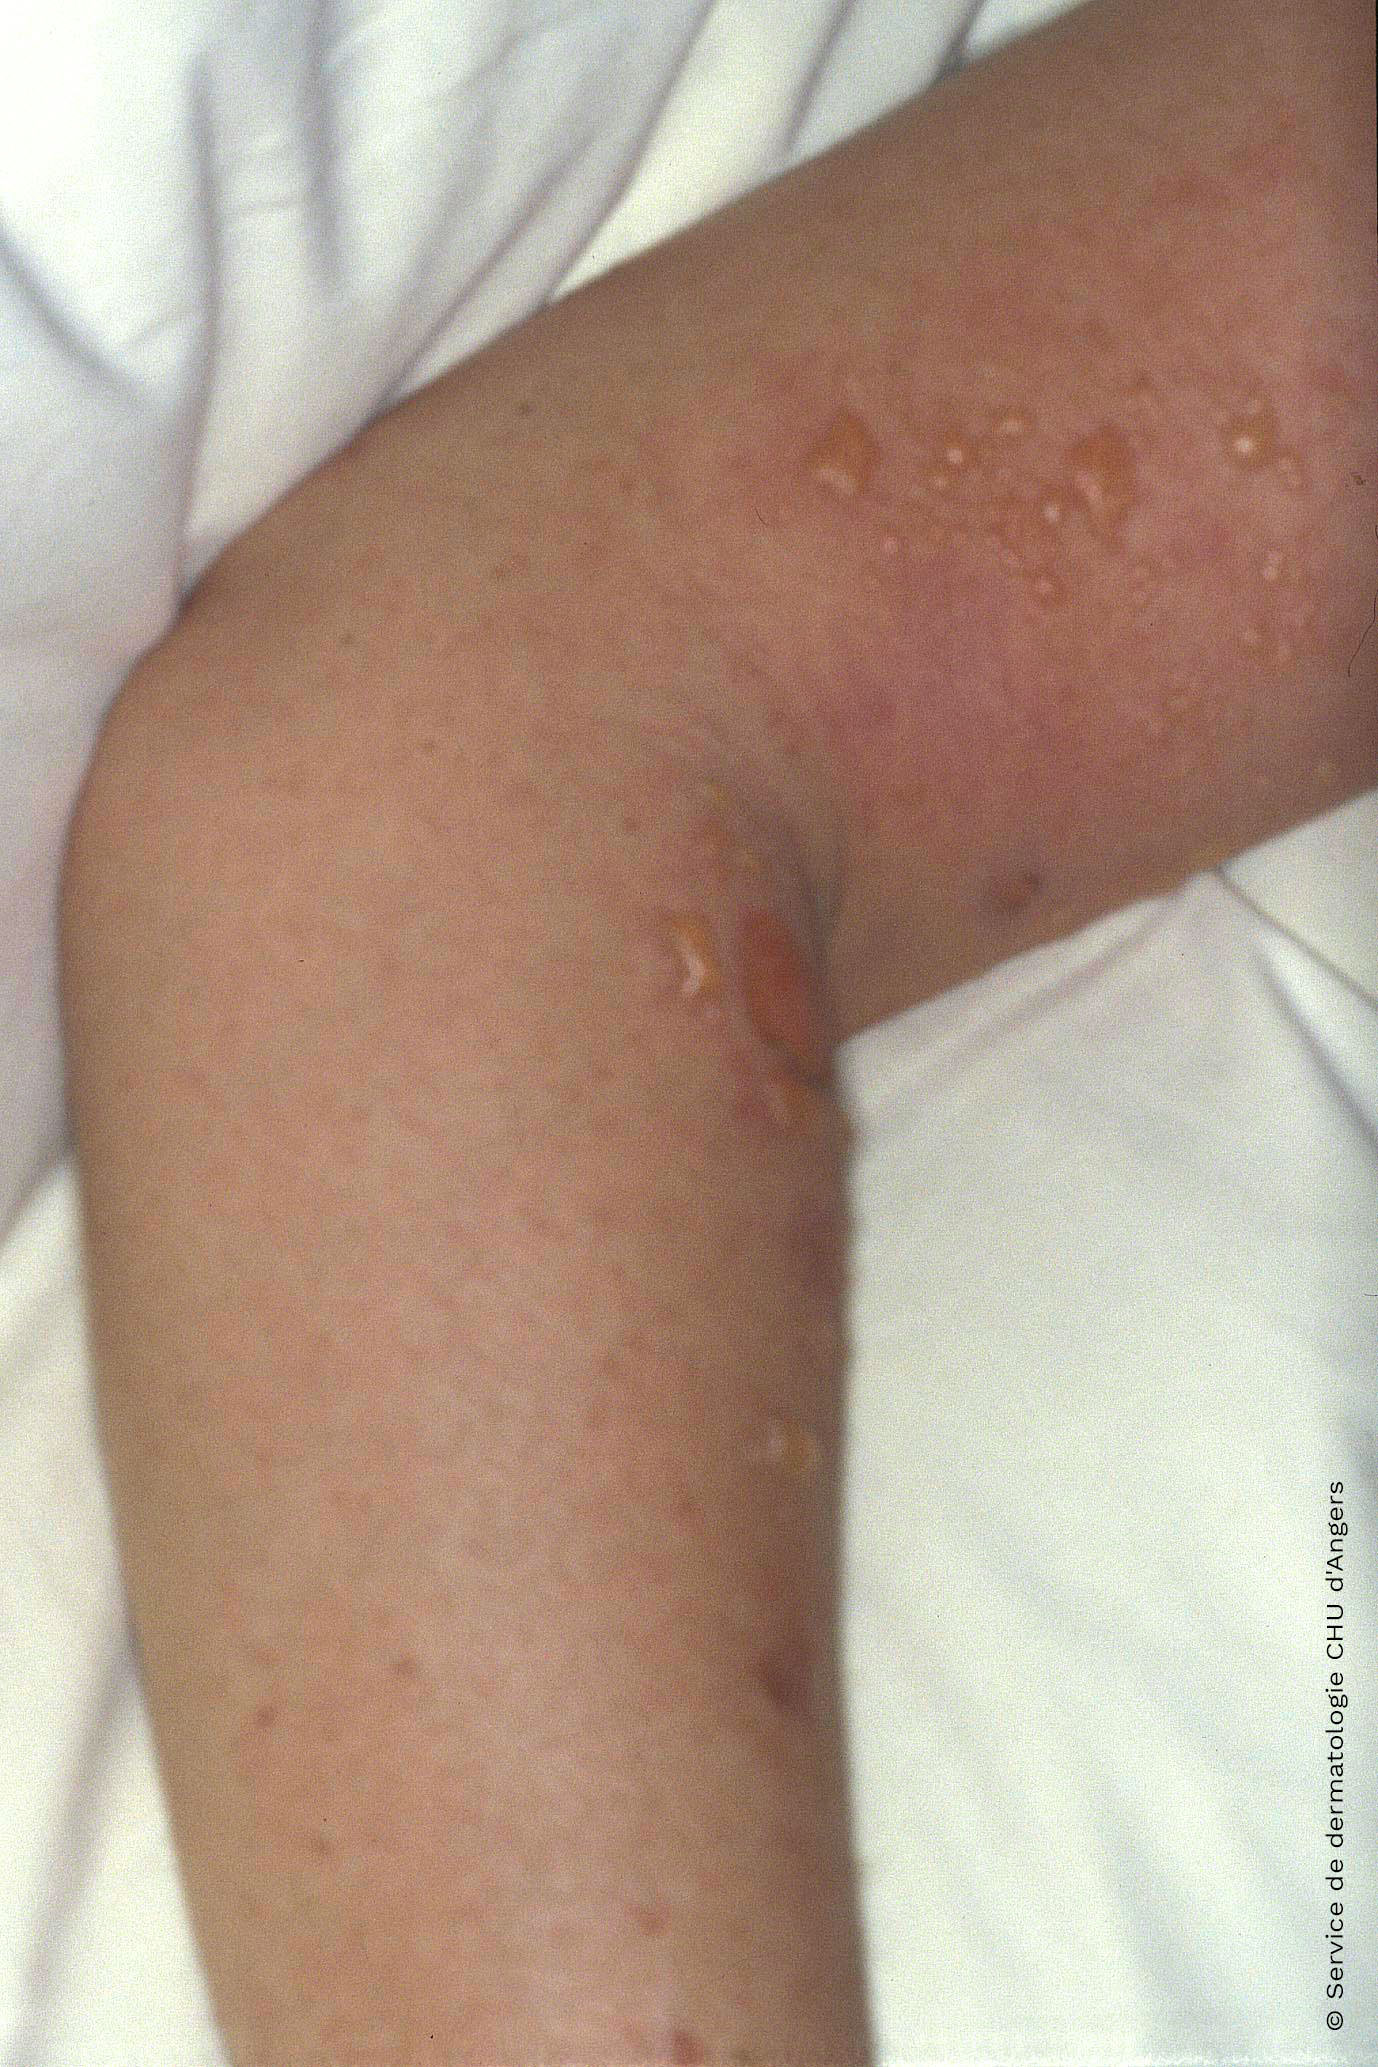 Eczema de contacto agudo en el brazo debido al ketoprofeno